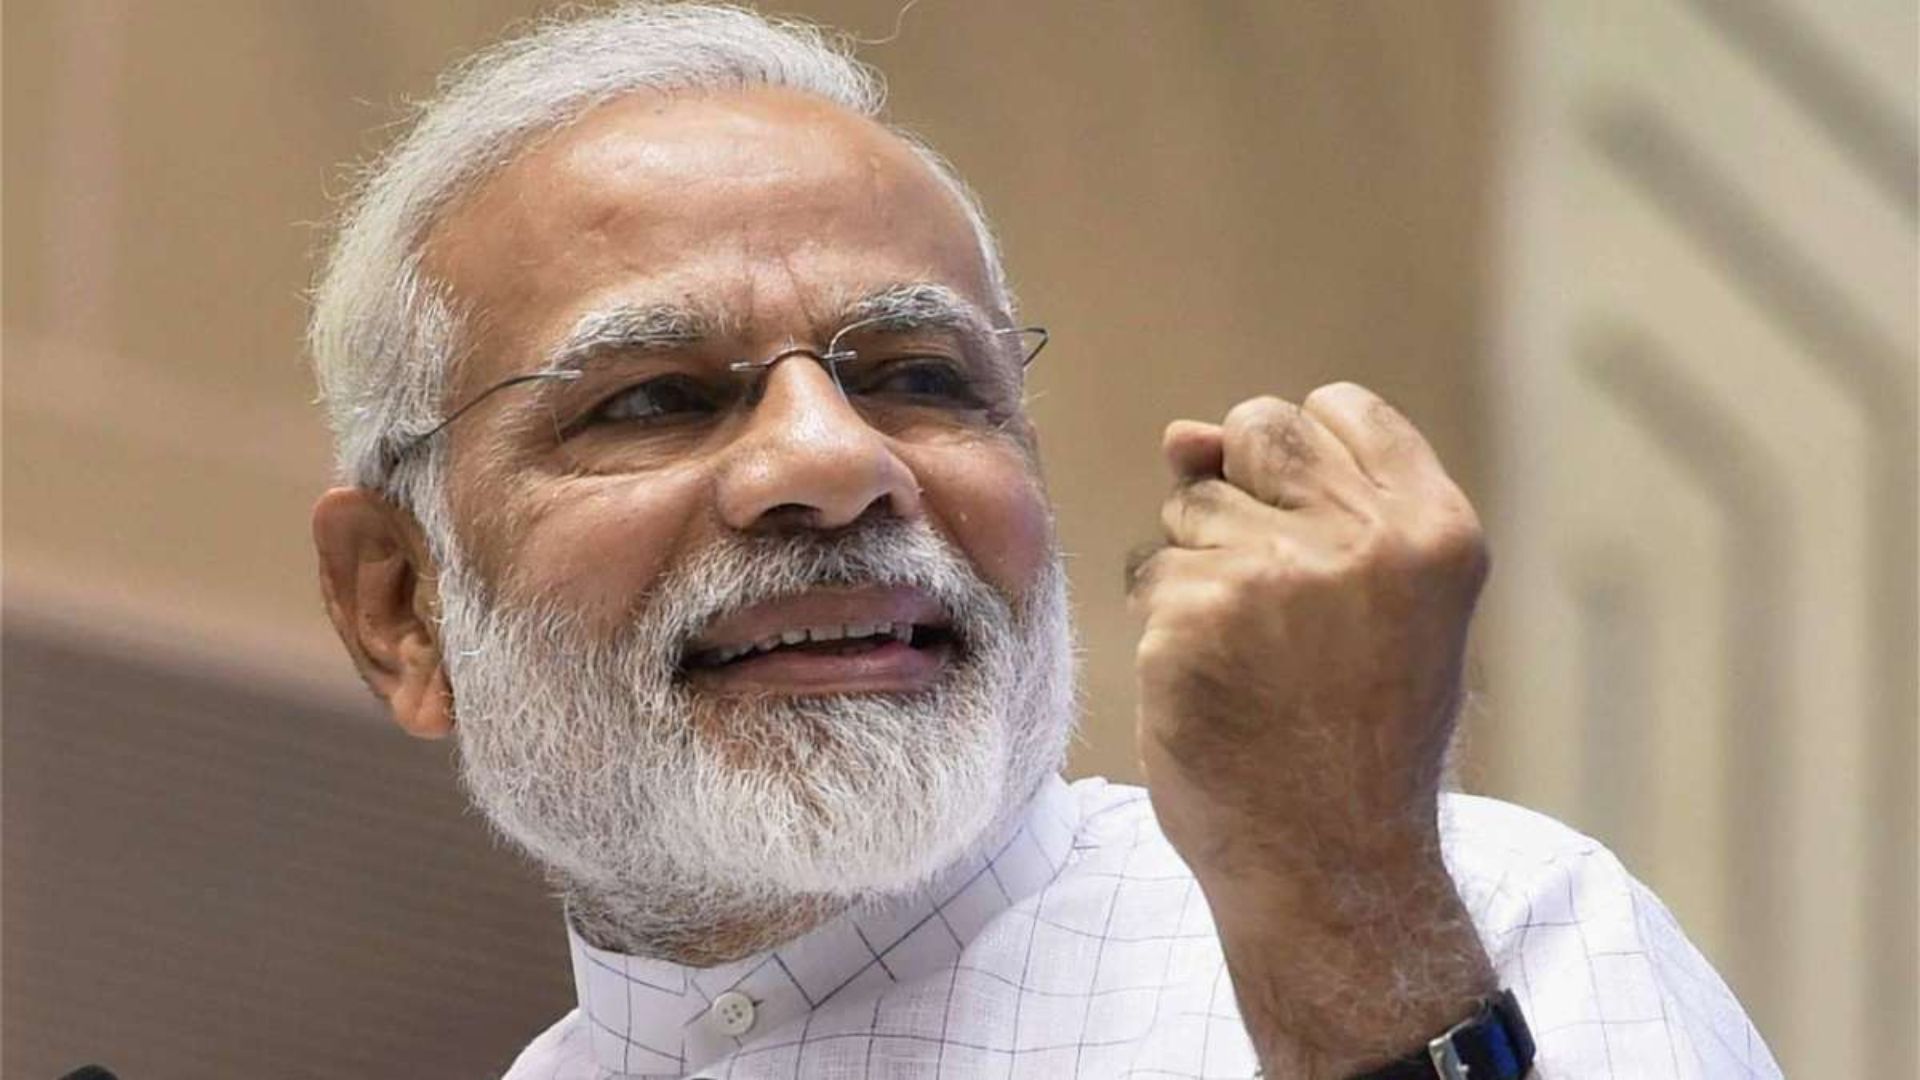 PM Modi’s Prediction Comes True! Sensex Surges Over 5,000 Points Post Lok Sabha Elections